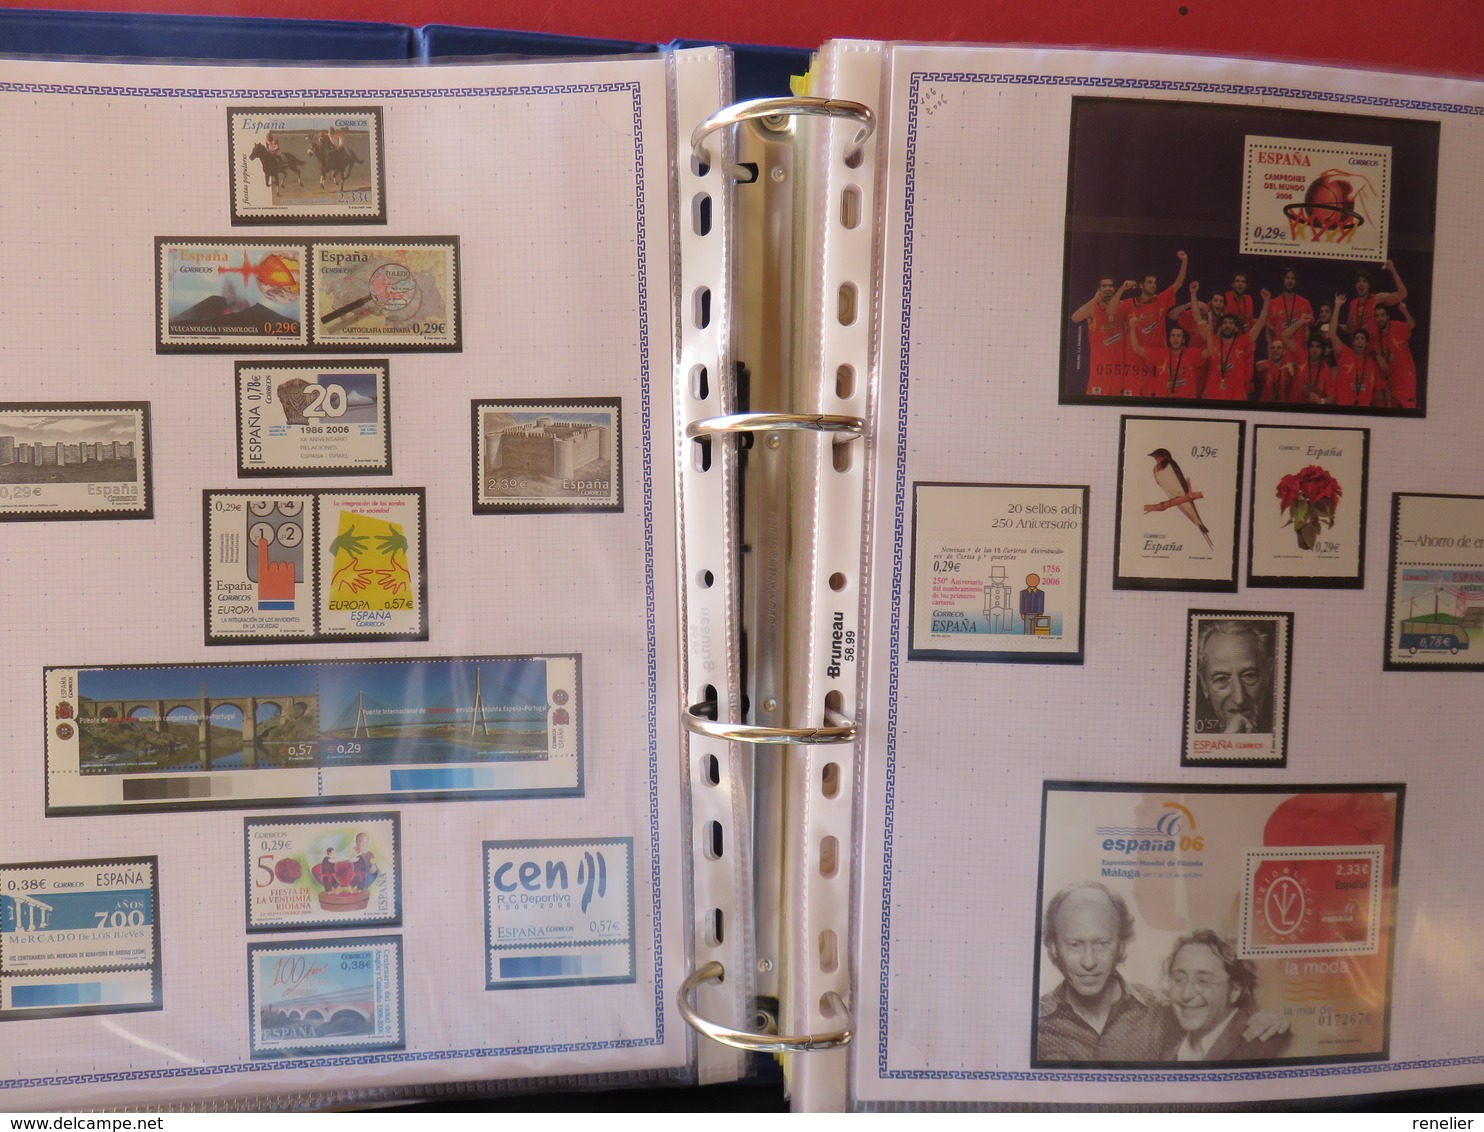 ESPAGNE - Belle collection des années 1979 à 1996 et 2006 à 2008 (partielles) - TP** et BF**, distributeurs, carnets